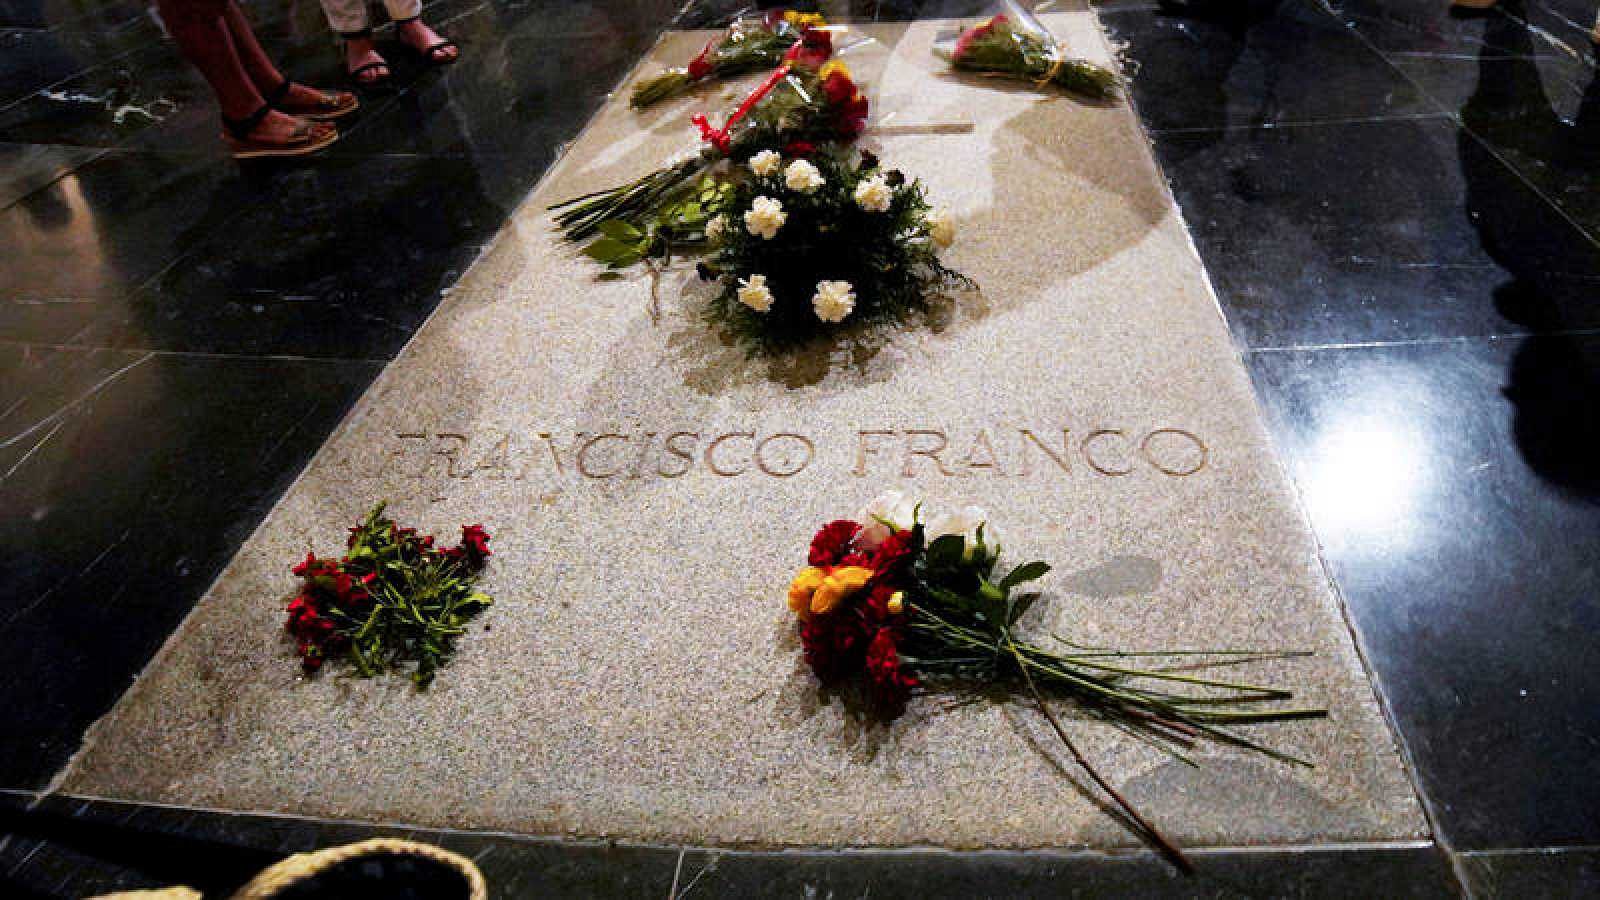 Corazón - ¿Quién es quién la familia Franco?